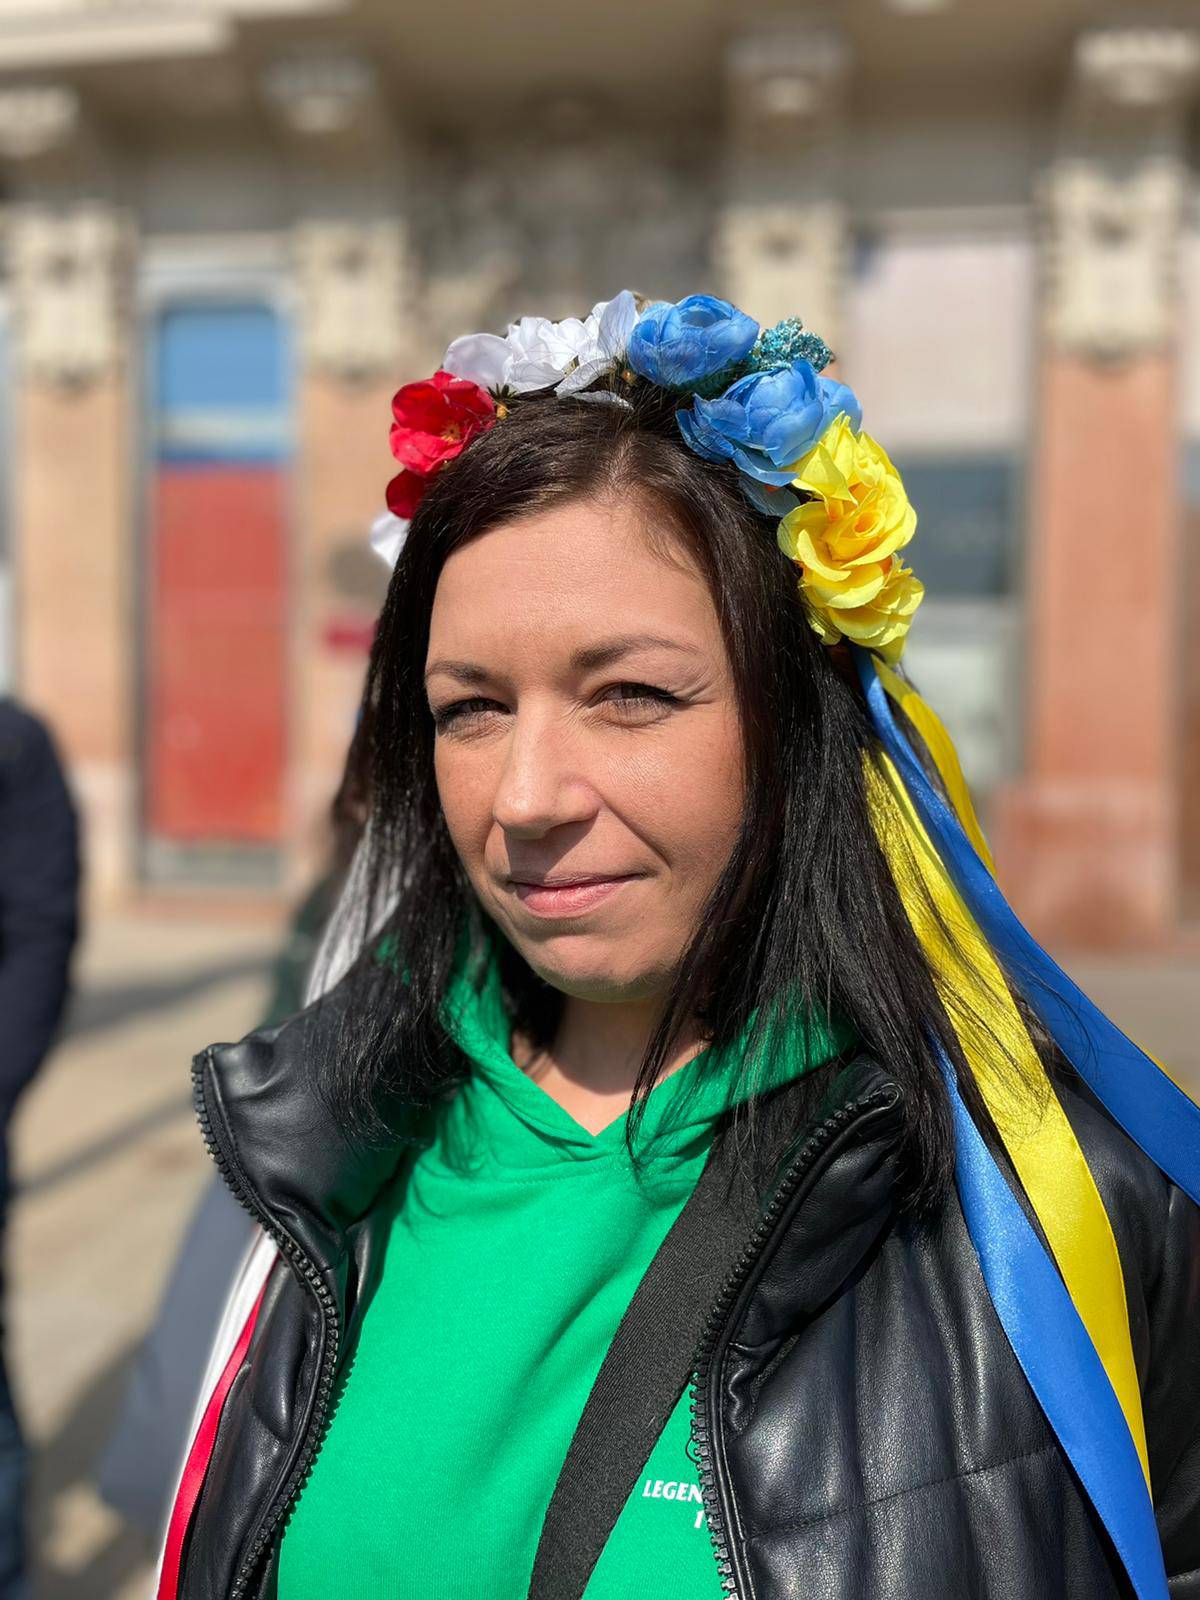 'Ja sam Ljudmila, a u Bjelorusiji ideš u zatvor za crvenu majicu i bijele tenisice. Vlast je uz Ruse'